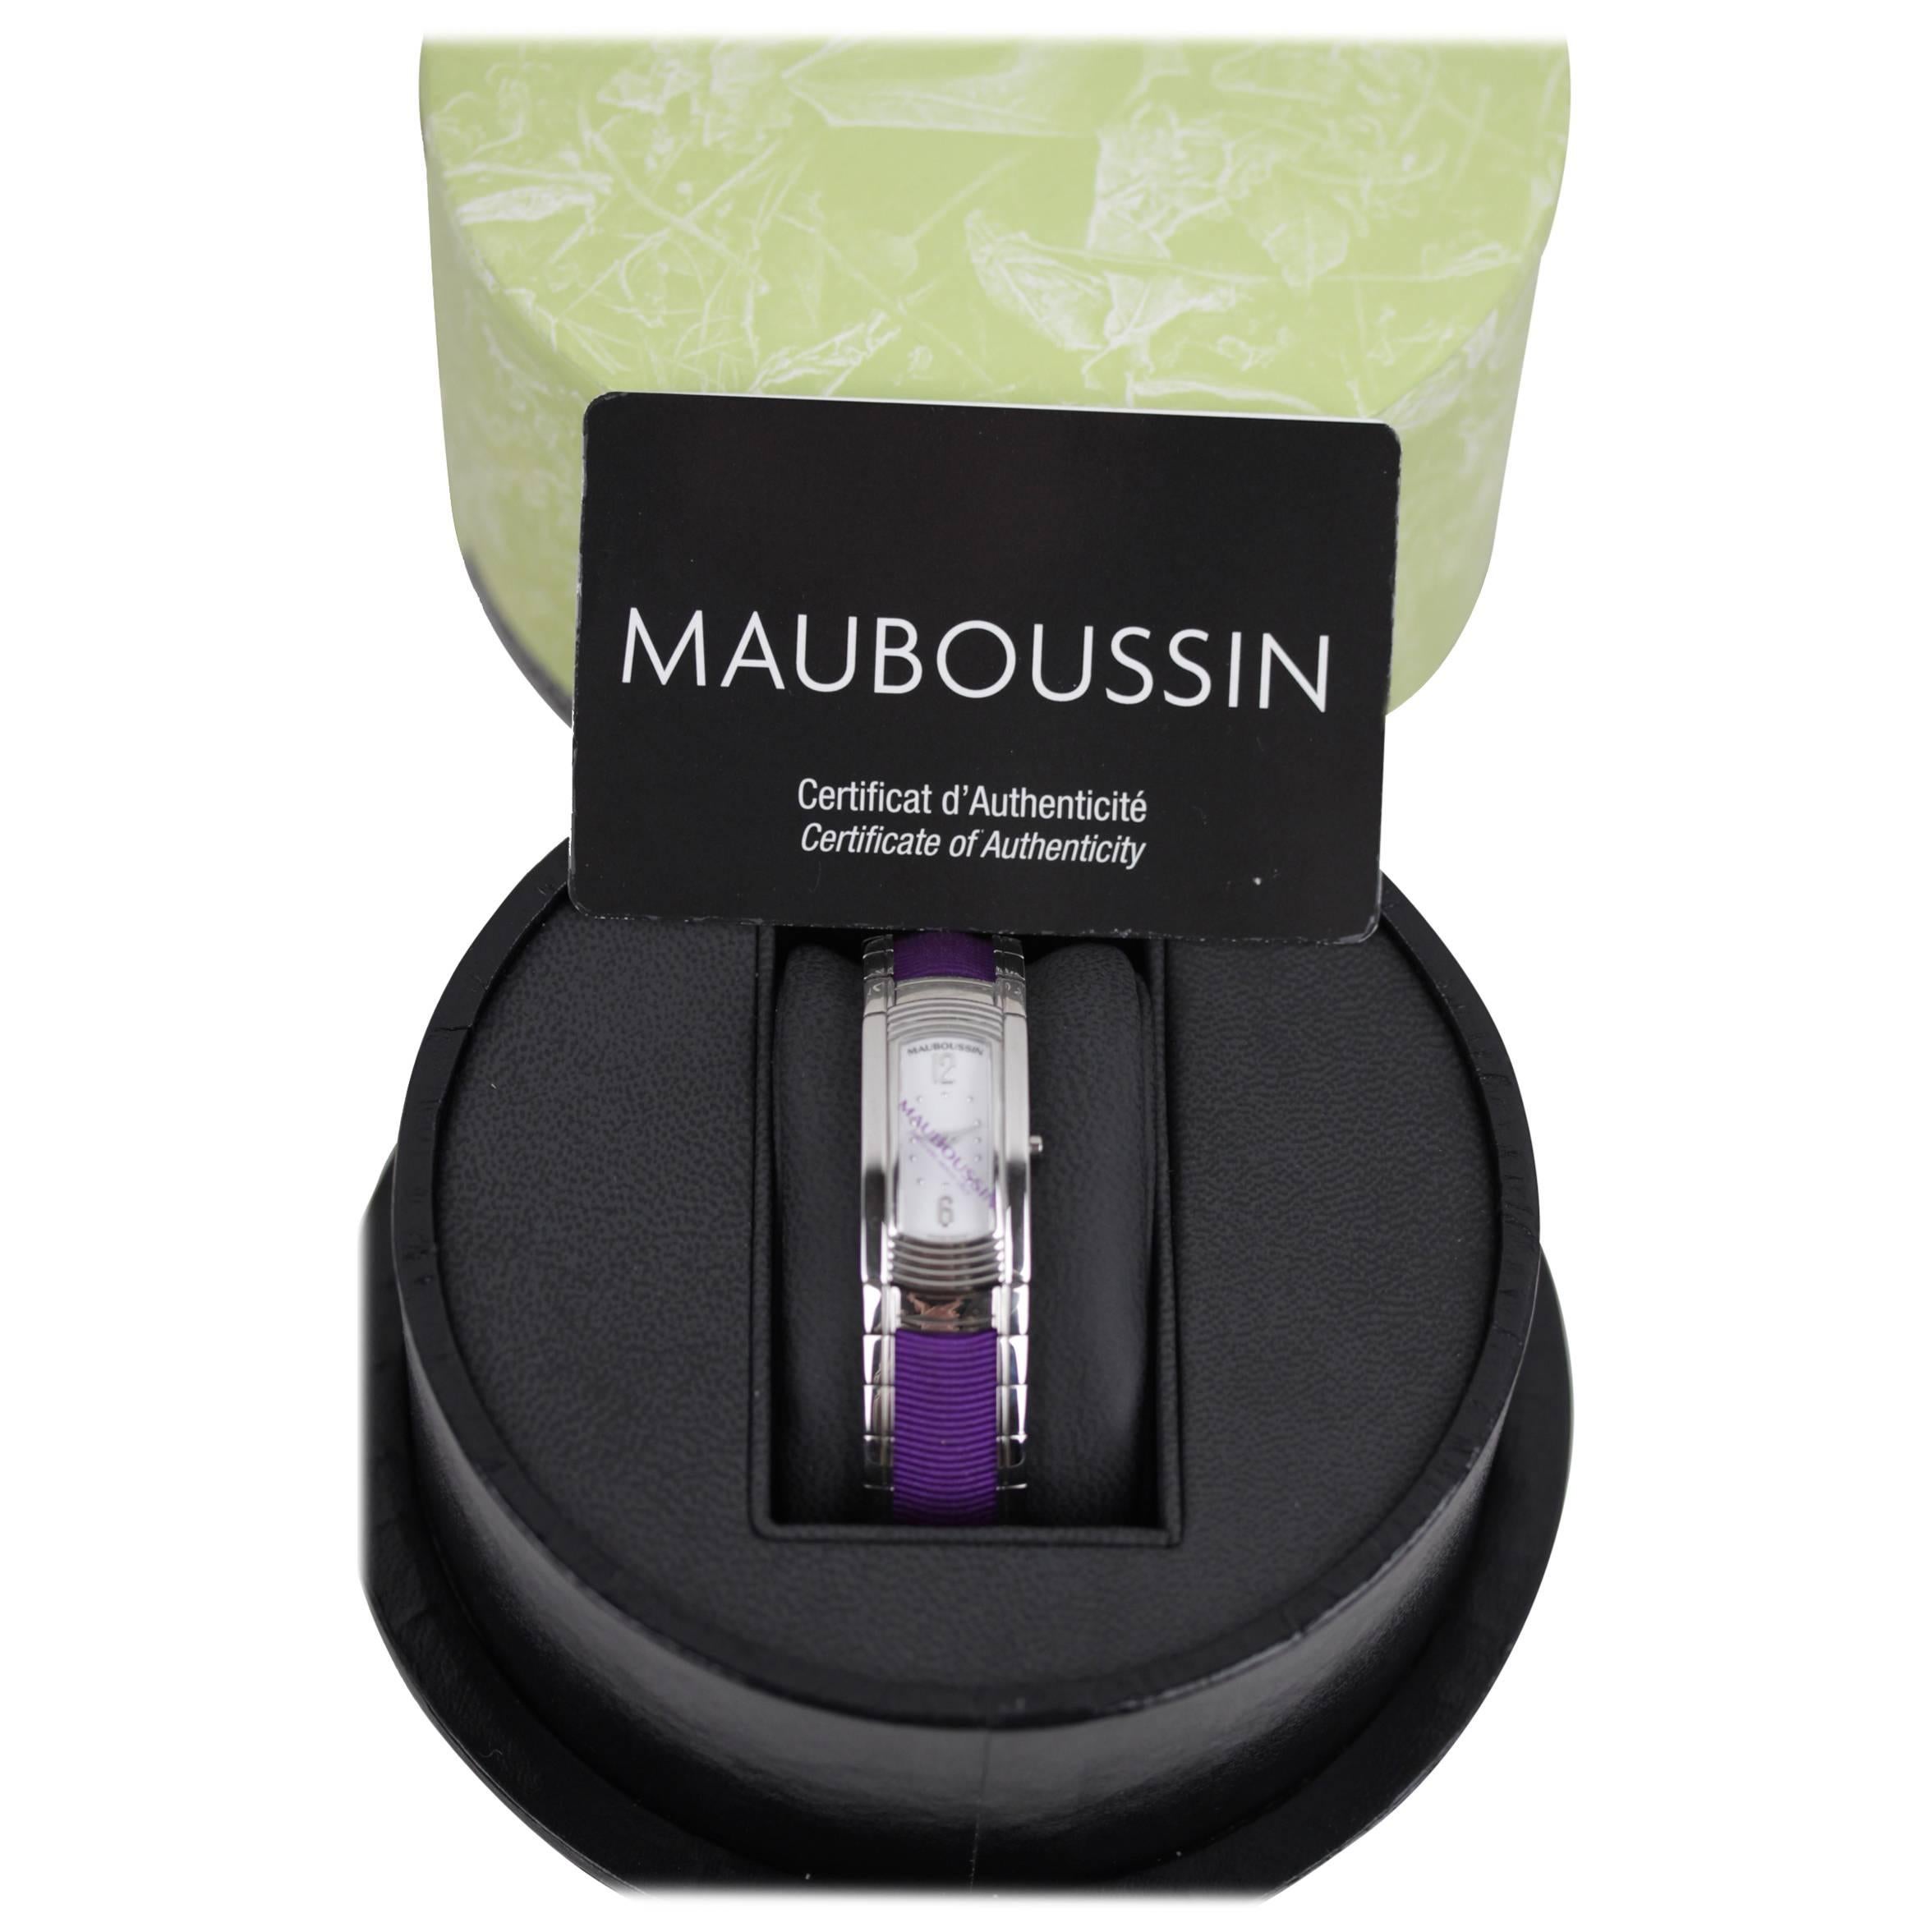 MAUBOUSSIN Stainless Steel LADY M WRIST WATCH Purple GrosGrain Bracelet w/ BOX